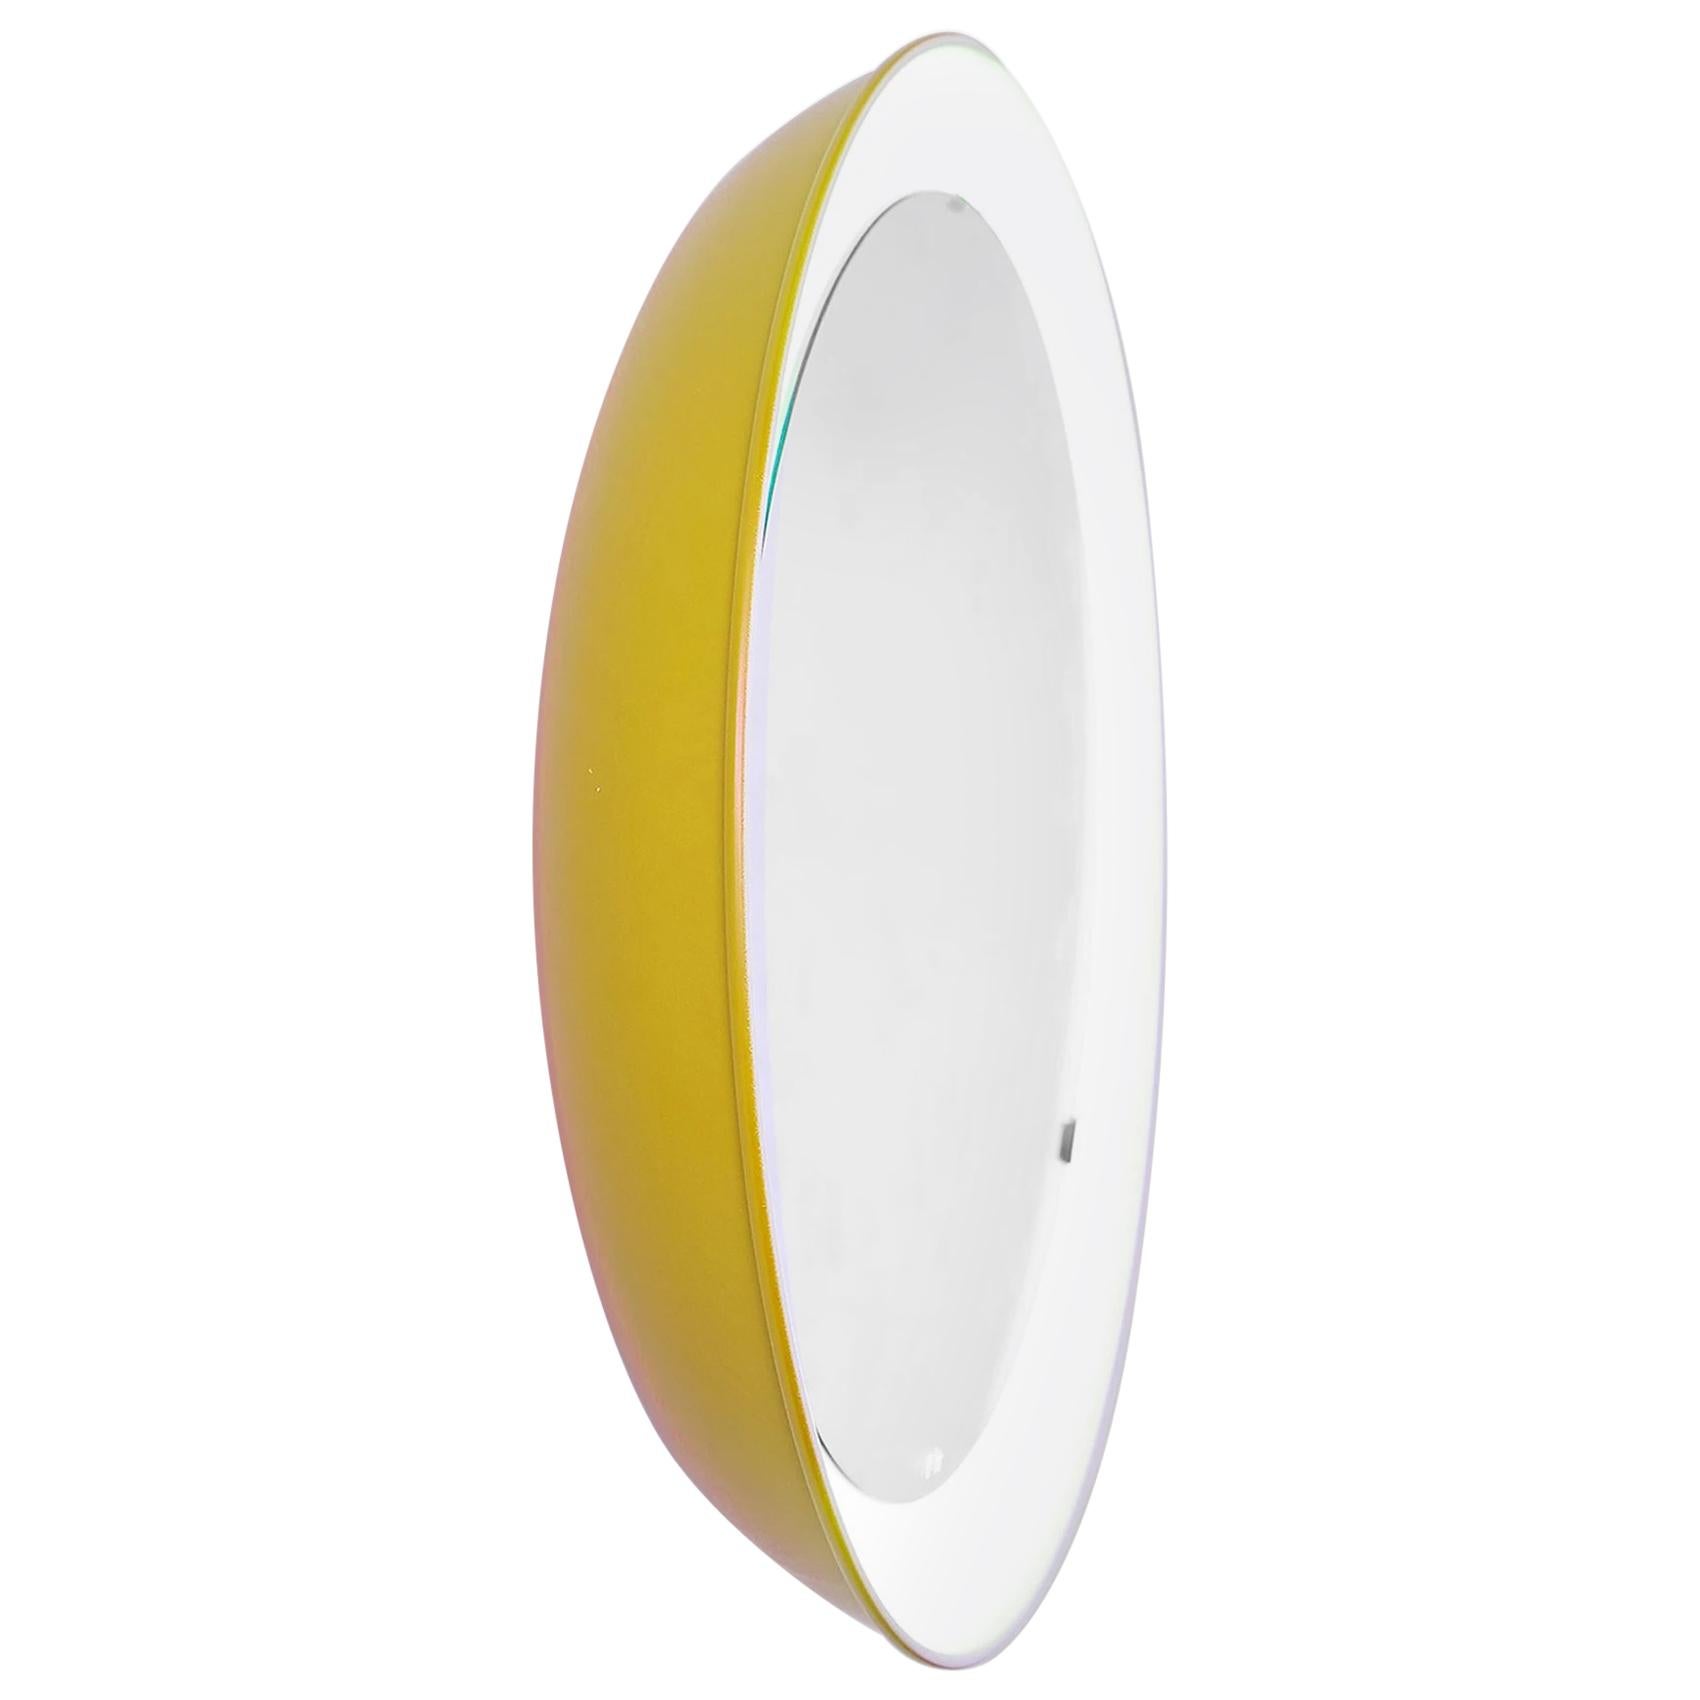 PH-Spiegel, gelb lackiert, Satin matt, Durchmesser 700 mm, Ein- und Ausziehschnur, ph